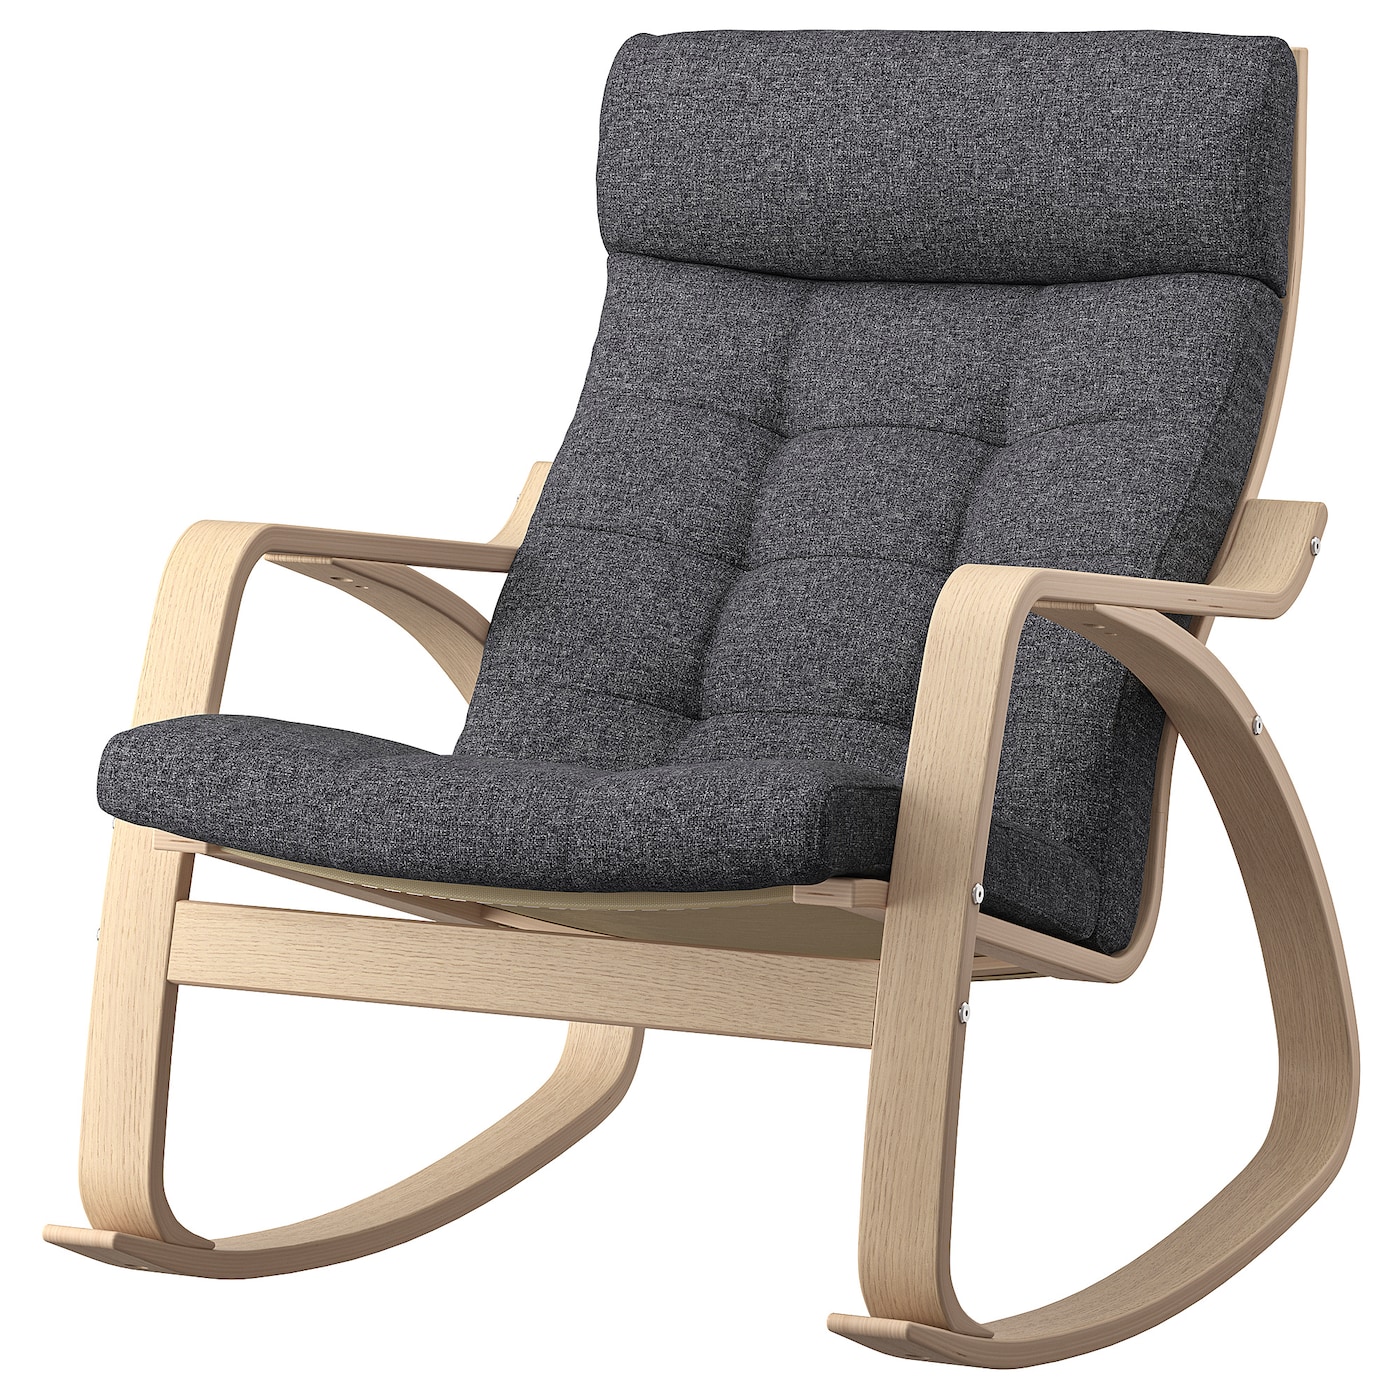 ПОЭНГ Кресло-качалка, дубовый шпон светлый/Гуннаред темно-серый POÄNG IKEA детское электрическое кресло качалка удобное кресло качалка бесплатная установка